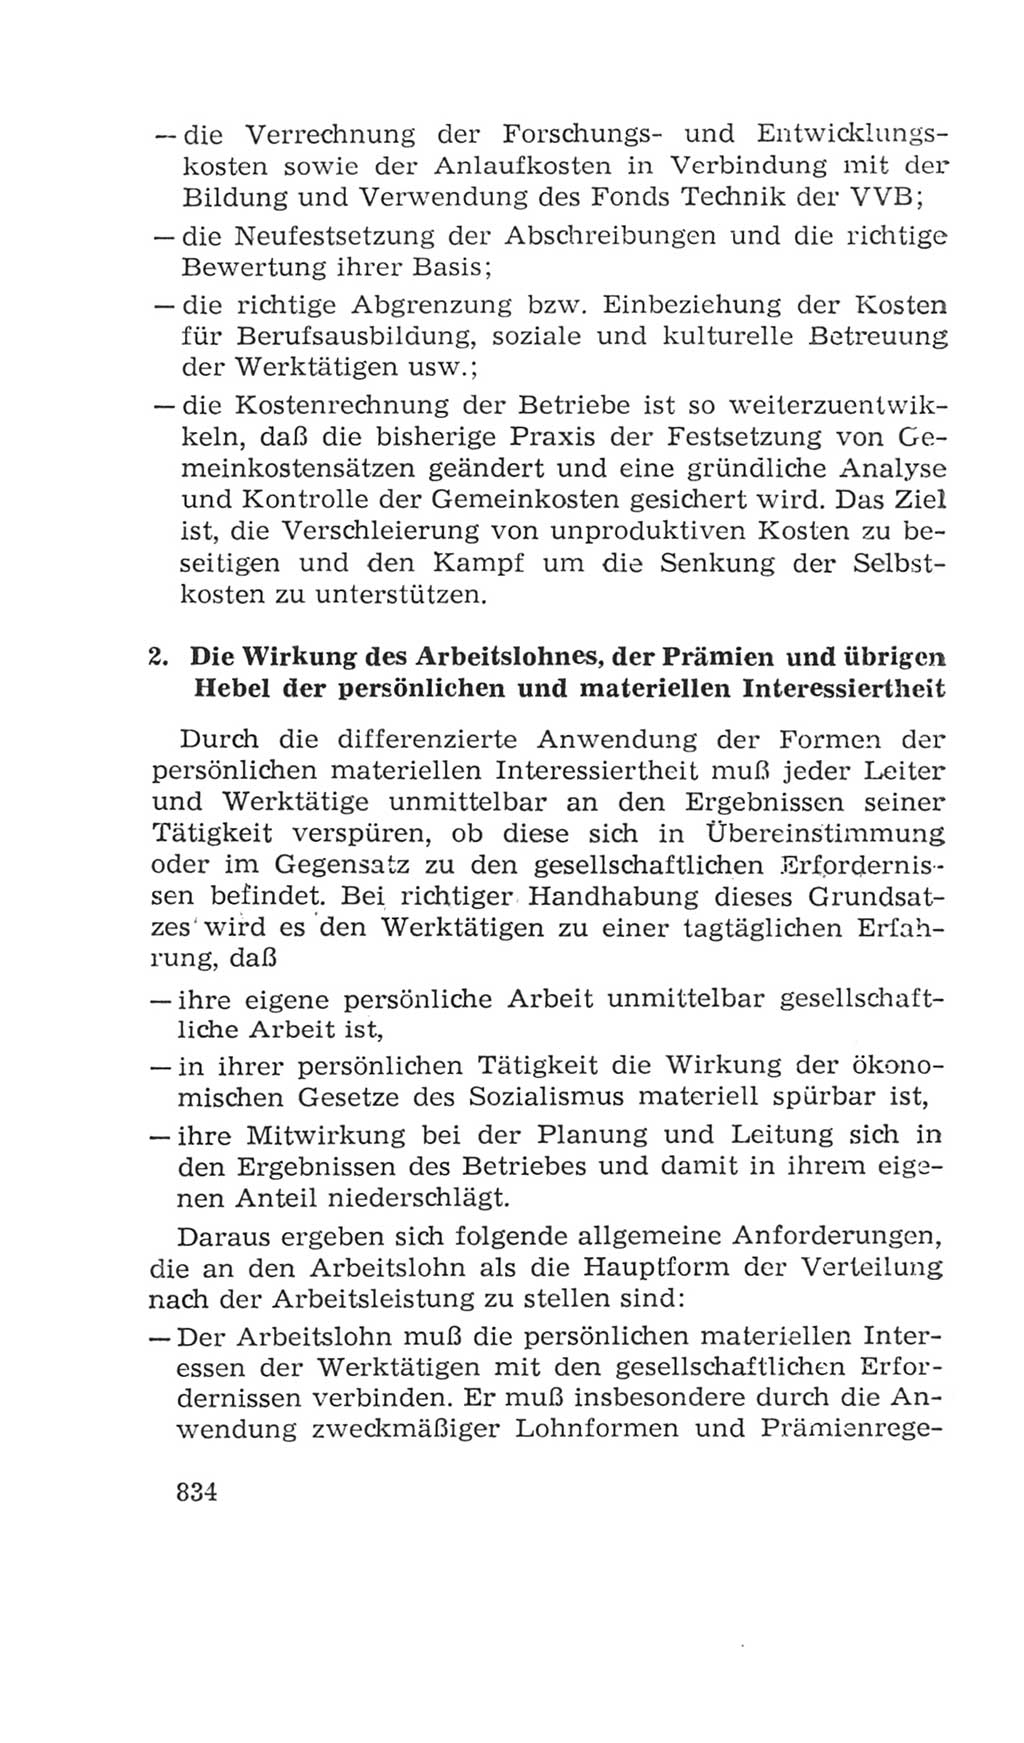 Volkskammer (VK) der Deutschen Demokratischen Republik (DDR), 4. Wahlperiode 1963-1967, Seite 834 (VK. DDR 4. WP. 1963-1967, S. 834)